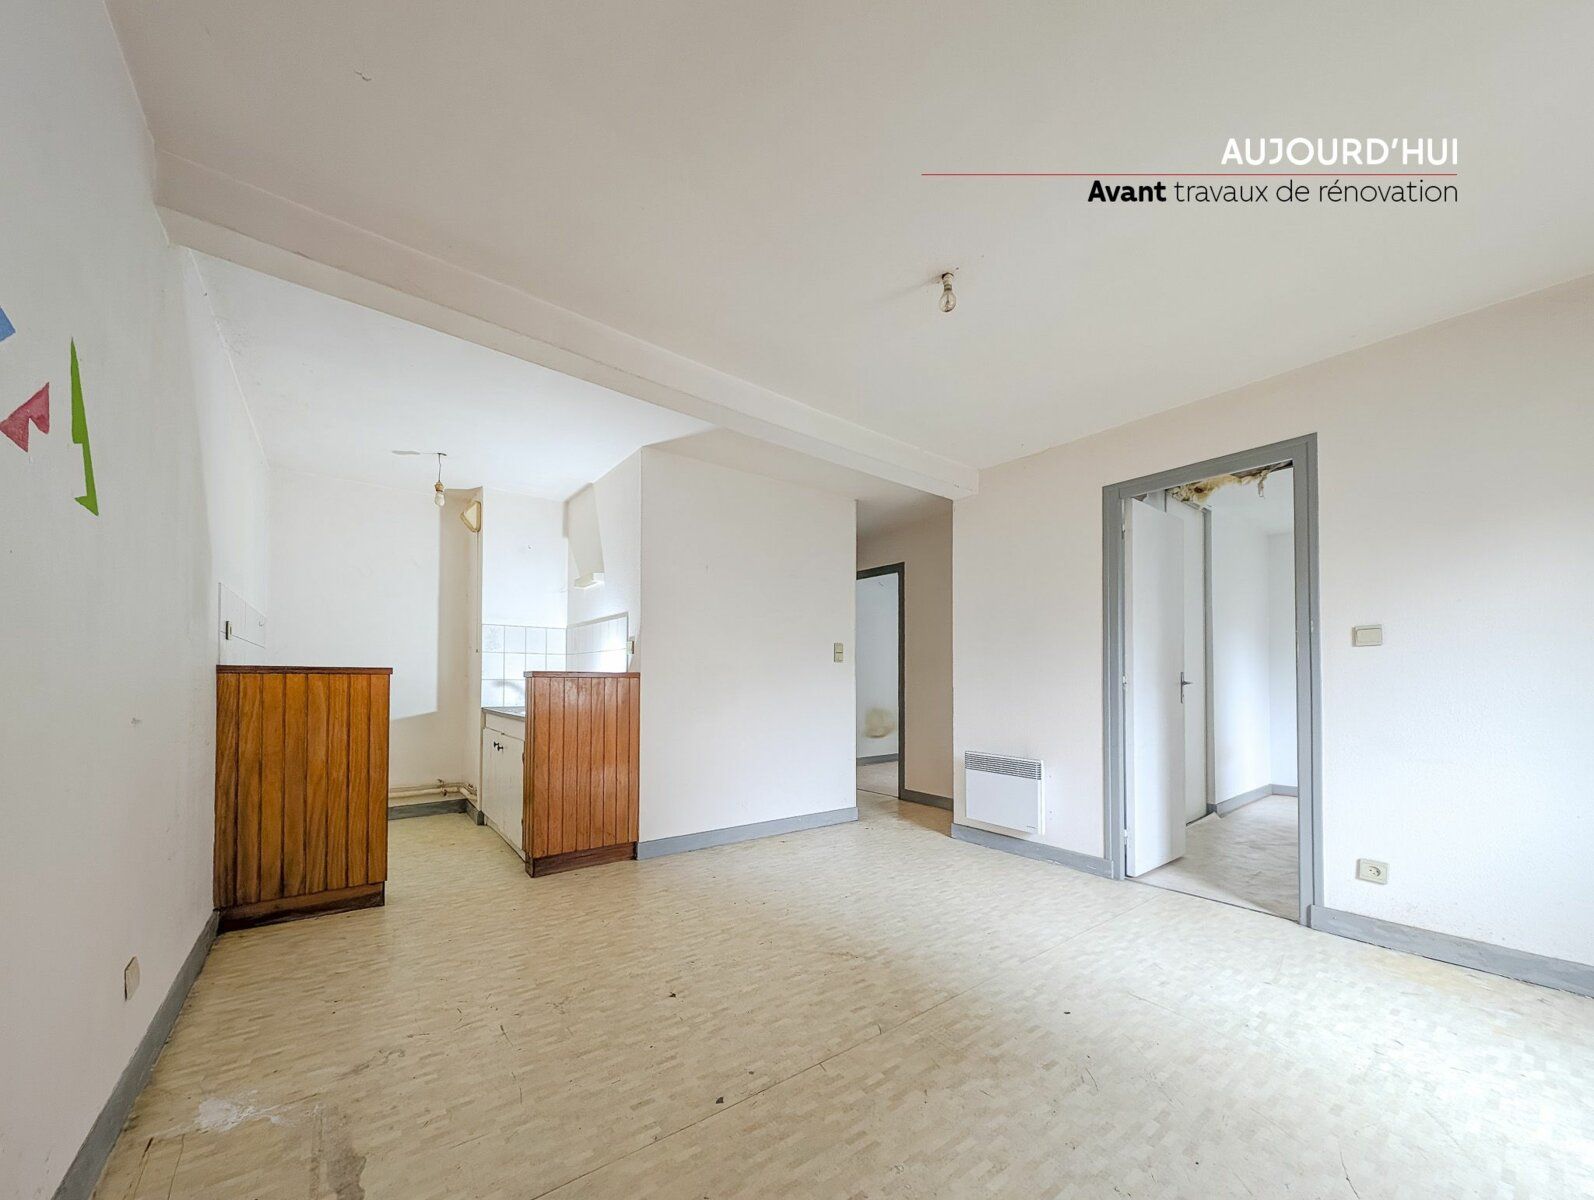 Appartement à vendre 3 41.97m2 à Aurillac vignette-1